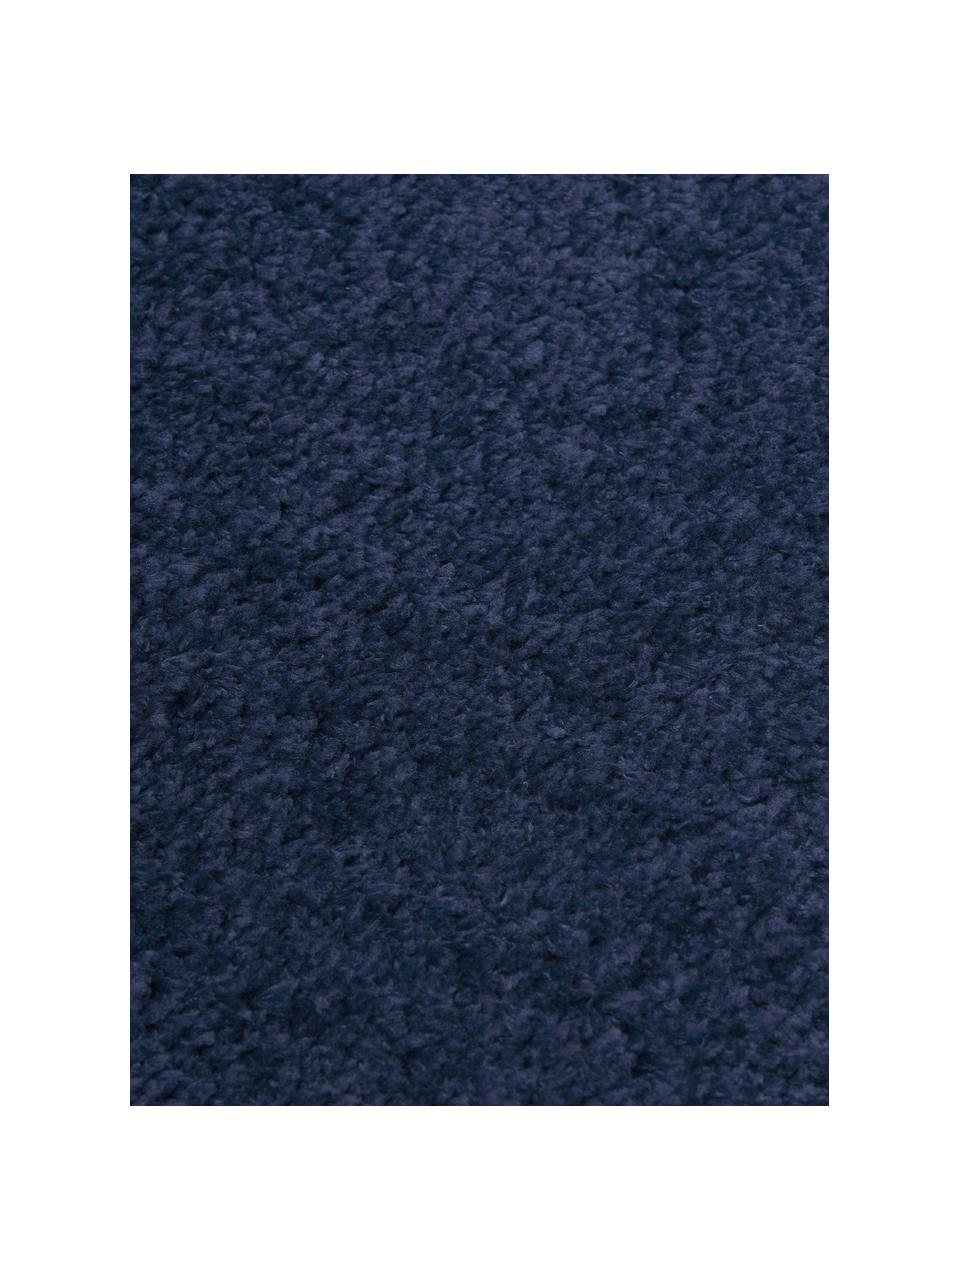 Flauschiger runder Hochflor-Teppich Leighton in Dunkelblau, Flor: Mikrofaser (100% Polyeste, Dunkelblau, Ø 120 cm (Größe S)